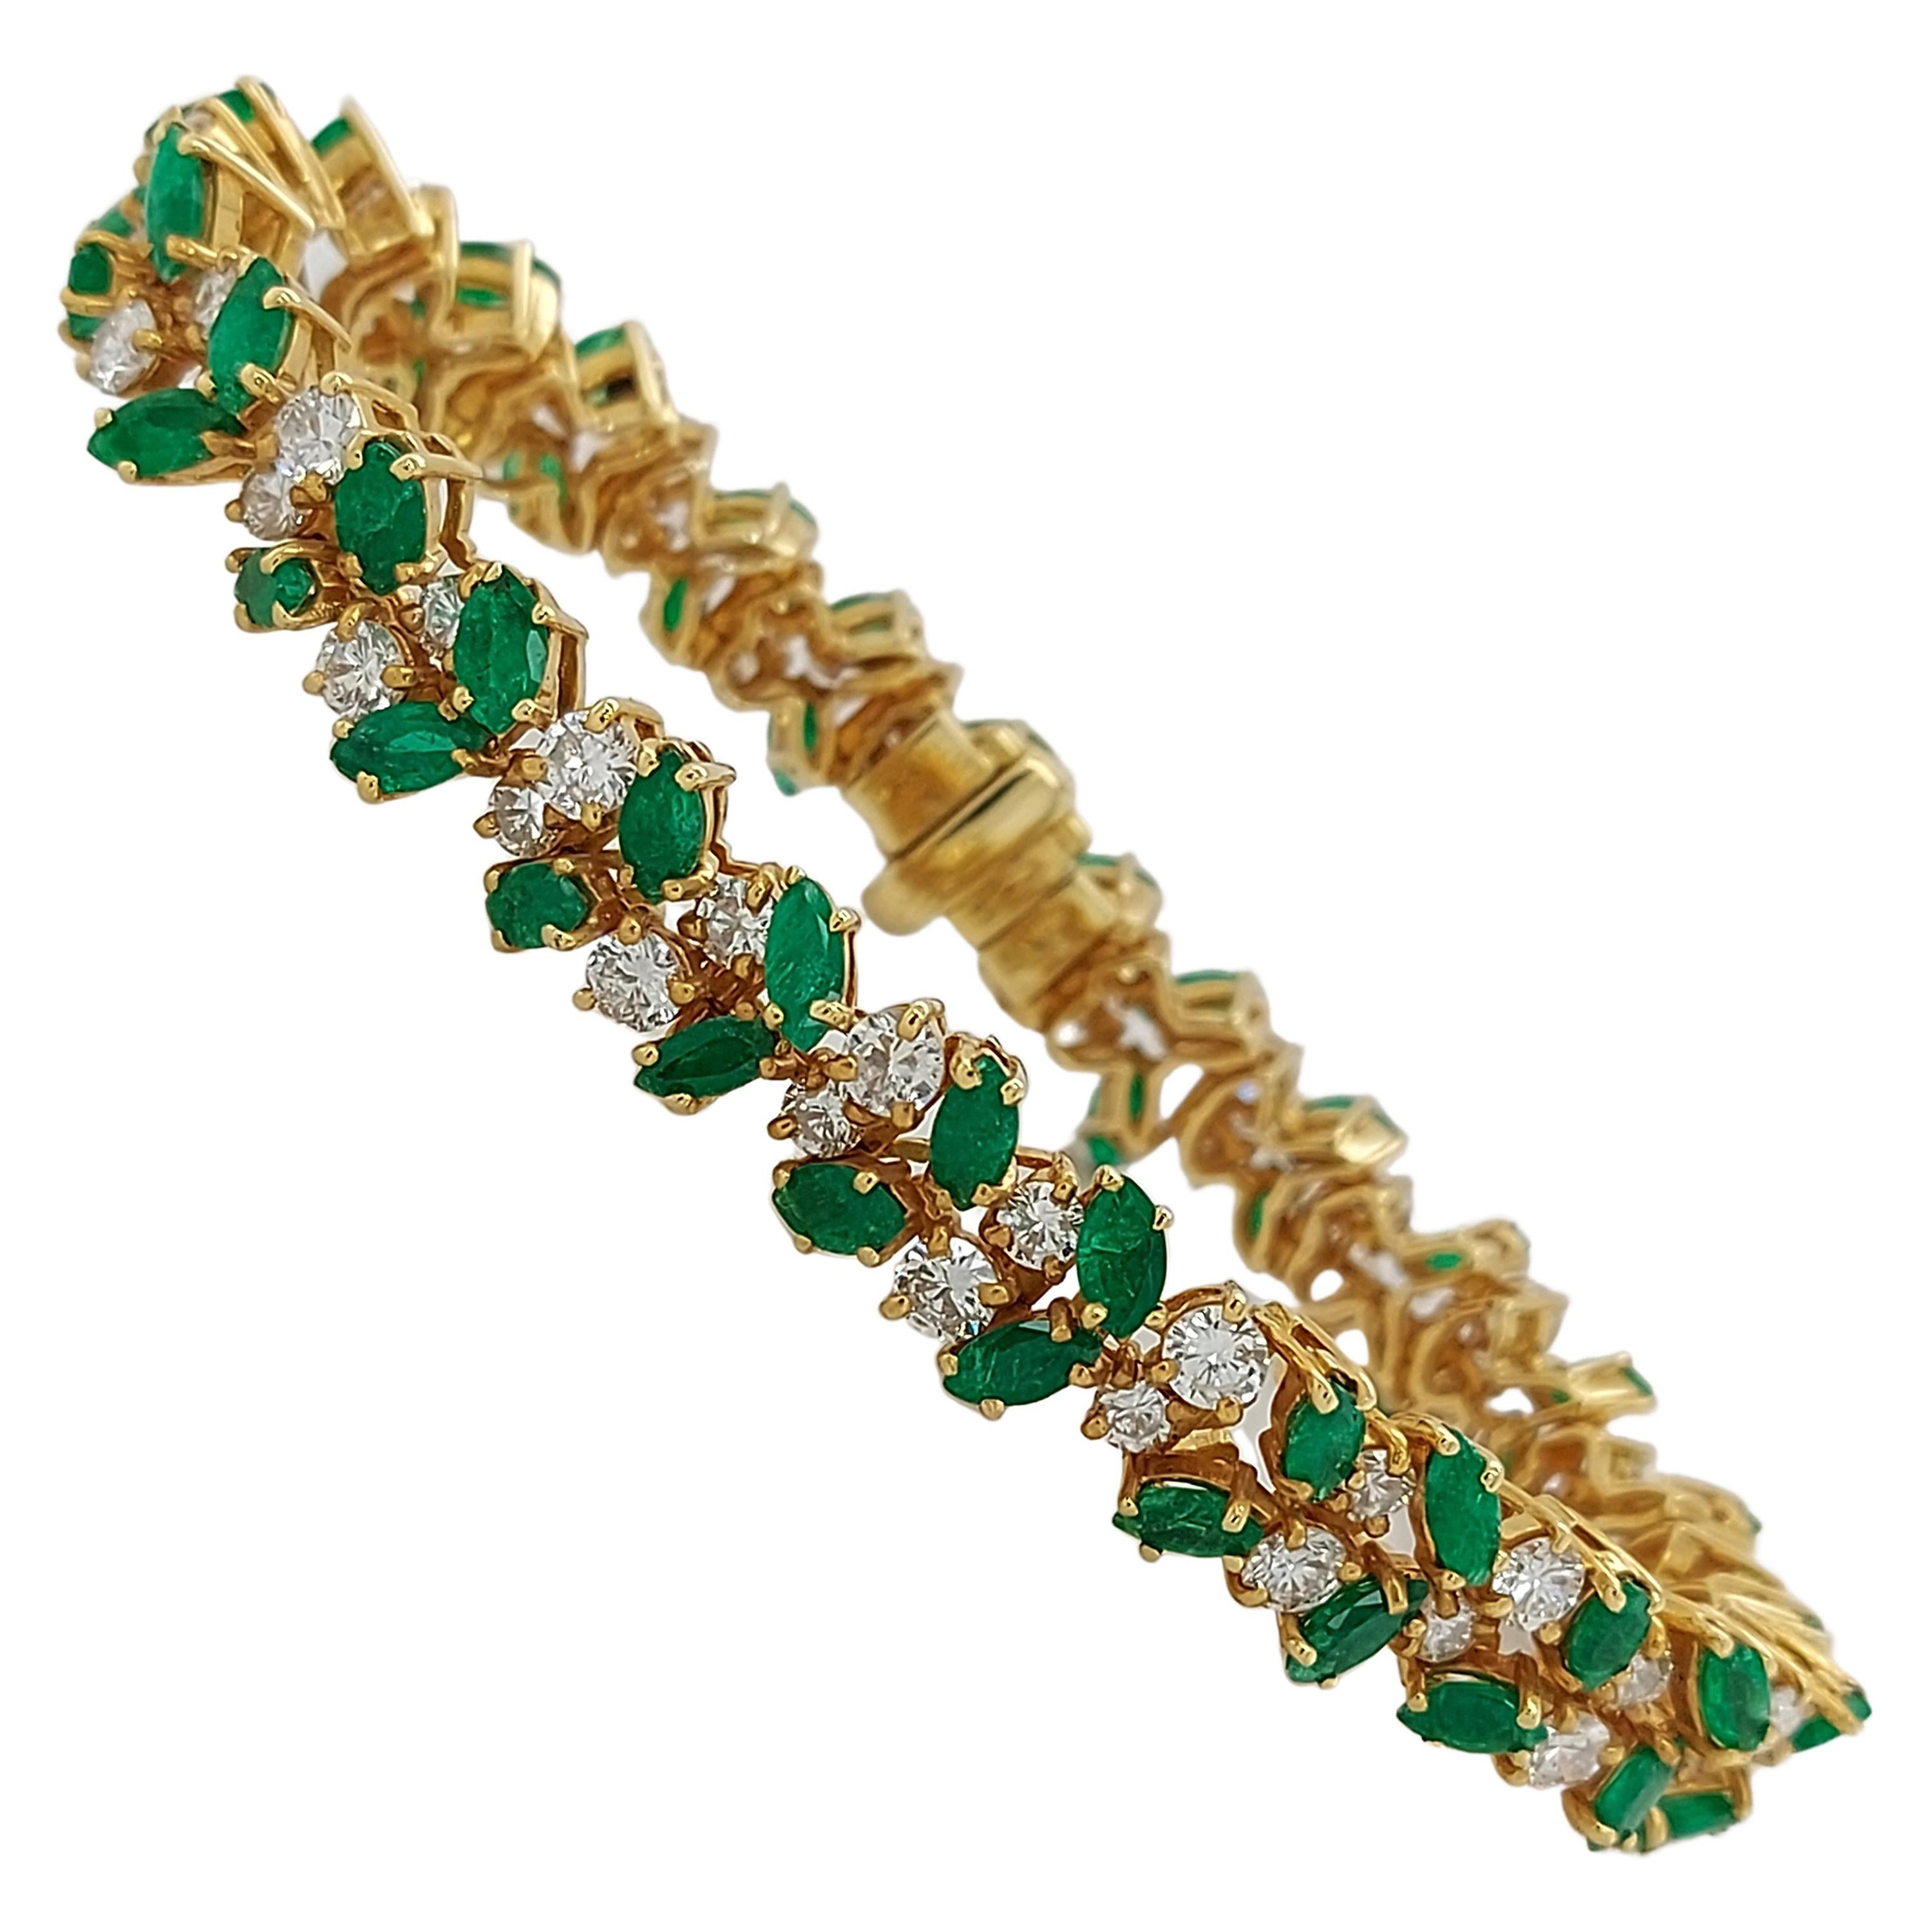 Luxurious 18 Karat Gold Bracelet with 6.75 Carat Diamonds and 10 Carat Emeralds